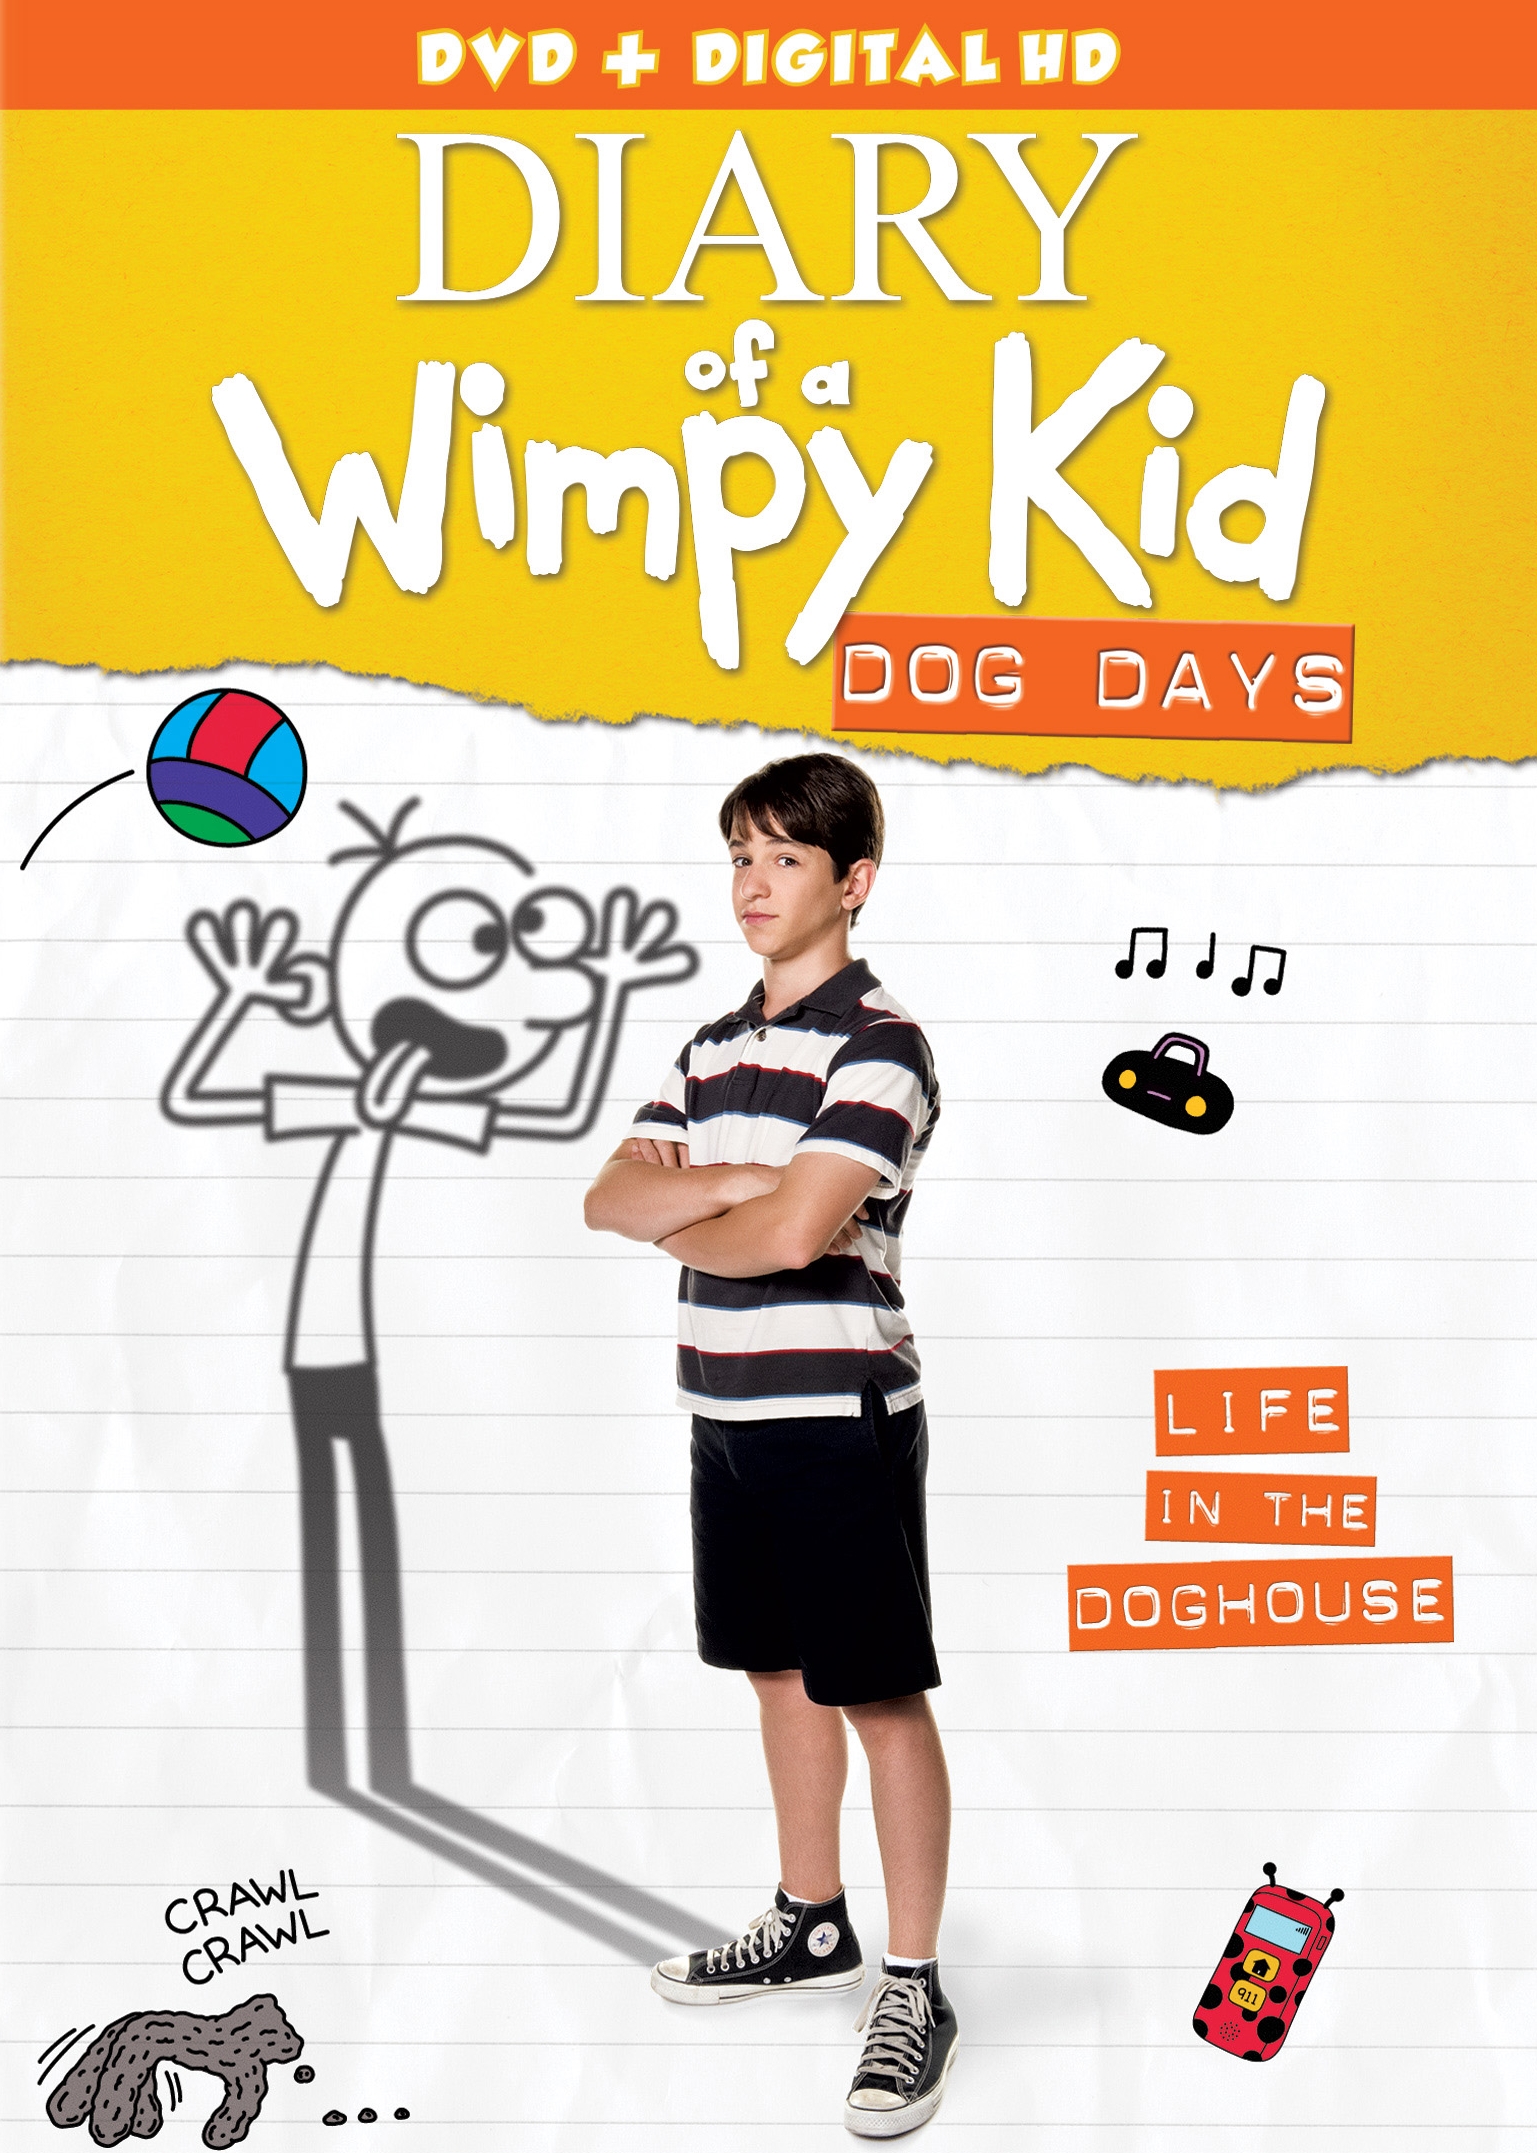 Shop · Wimpy Kid · Official